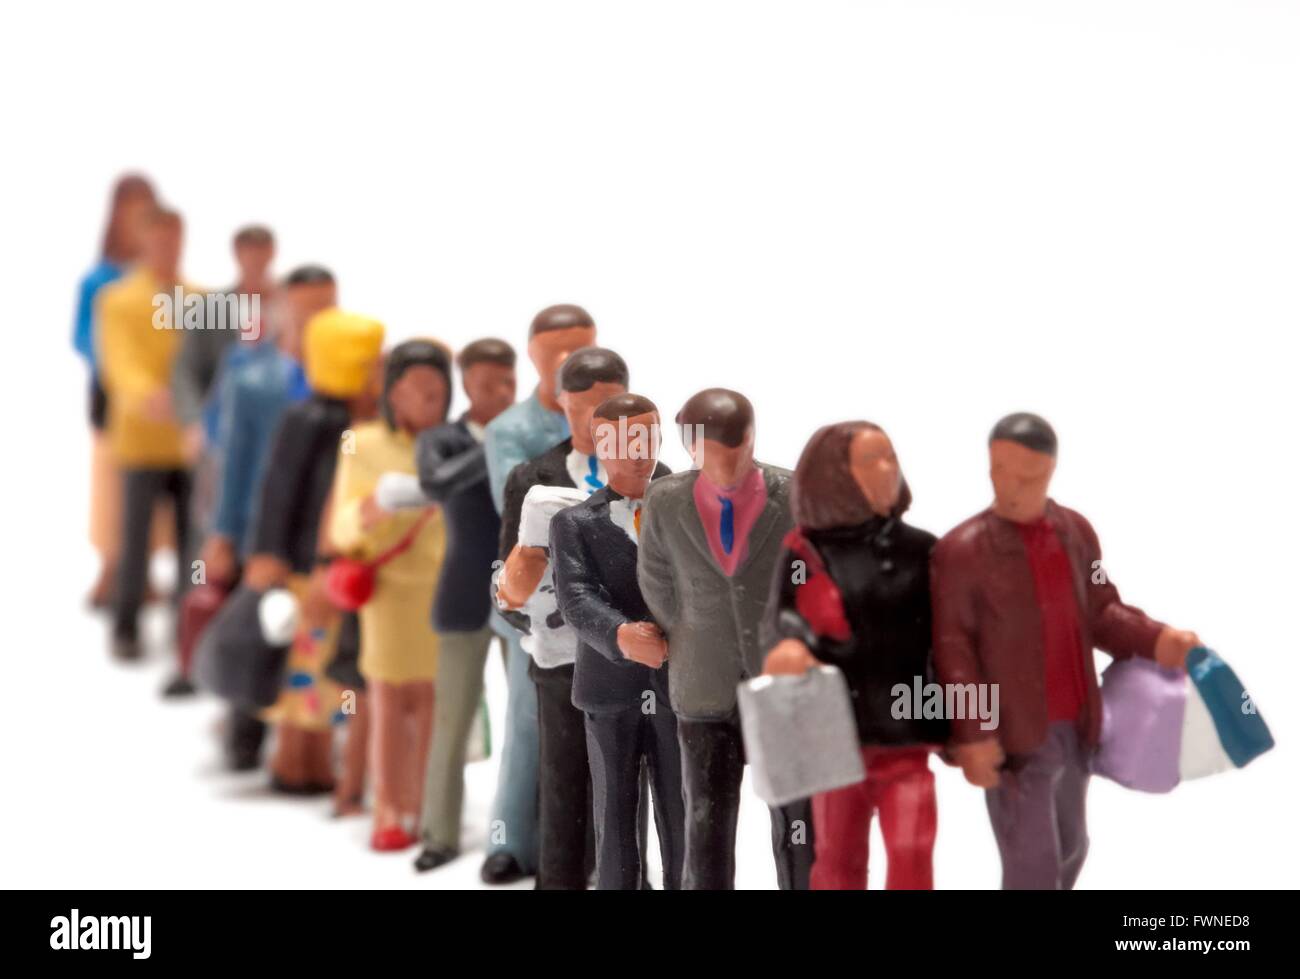 Miniatur Figur Menschen bilden eine geordnete Warteschlange vor einem weißen Hintergrund Stockfoto